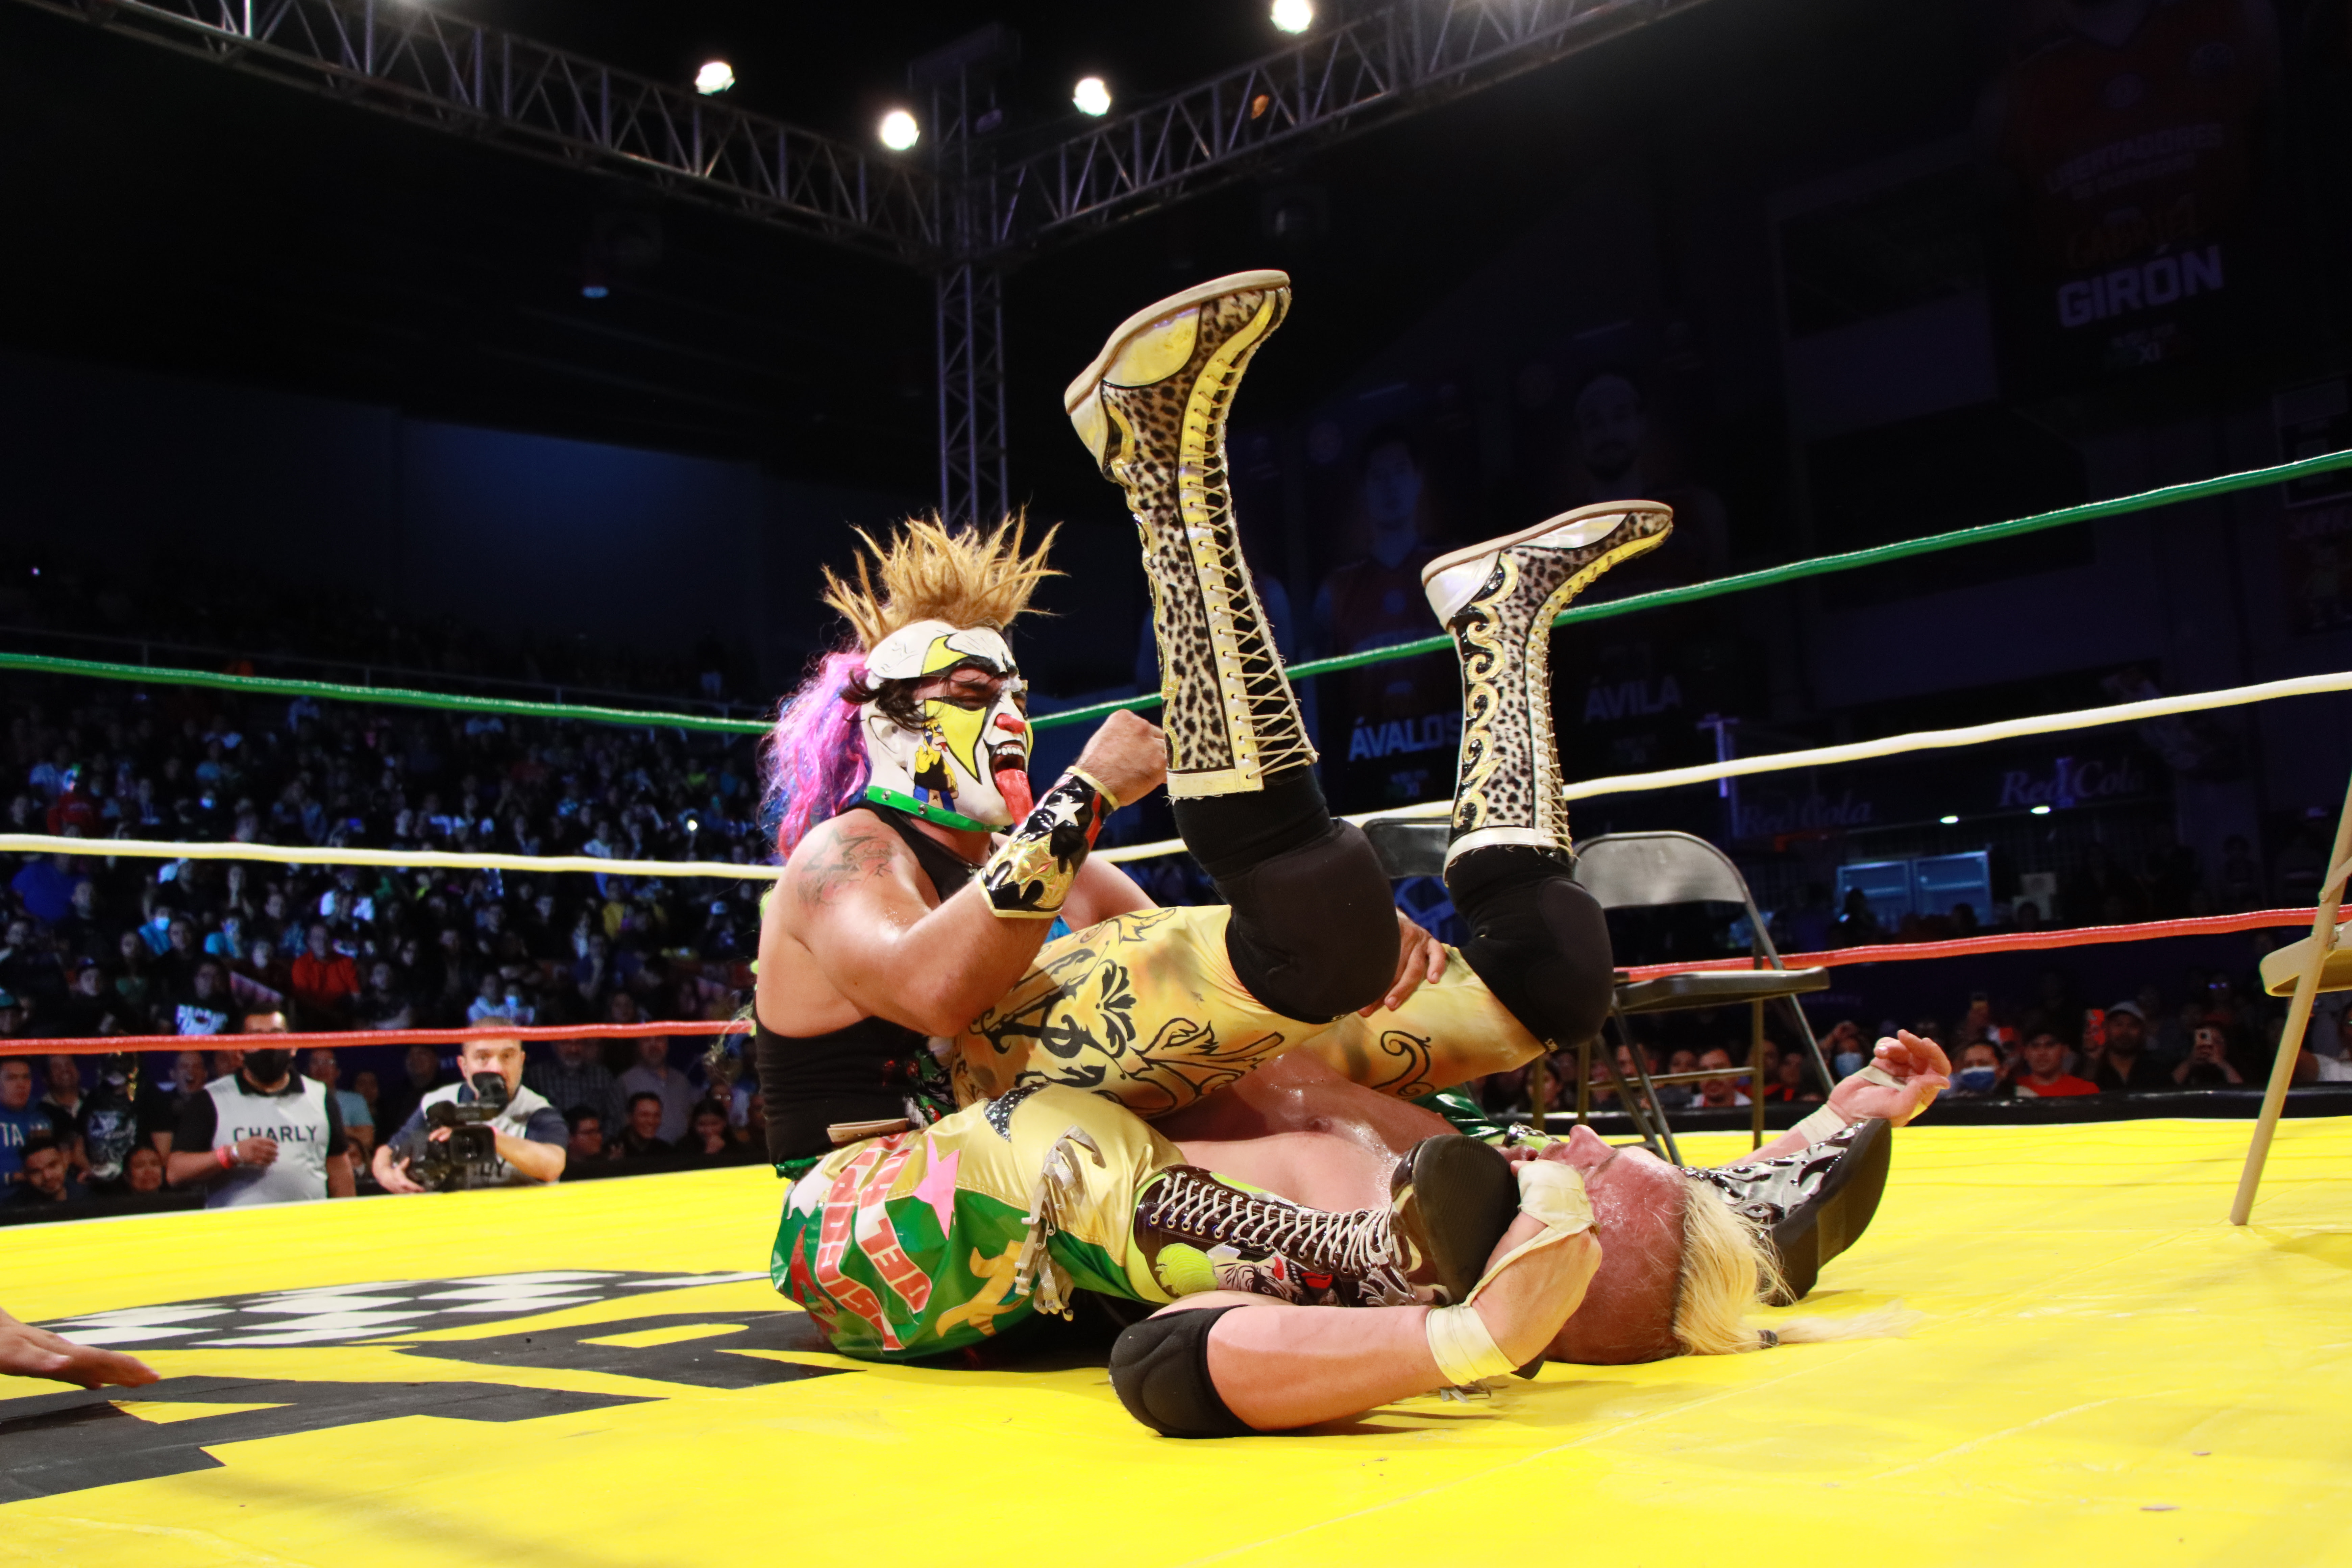 Triplemanía Xxxii Monterrey en vivo y en exclusiva por Space y Max, la casa de Lucha Libre AAA 23